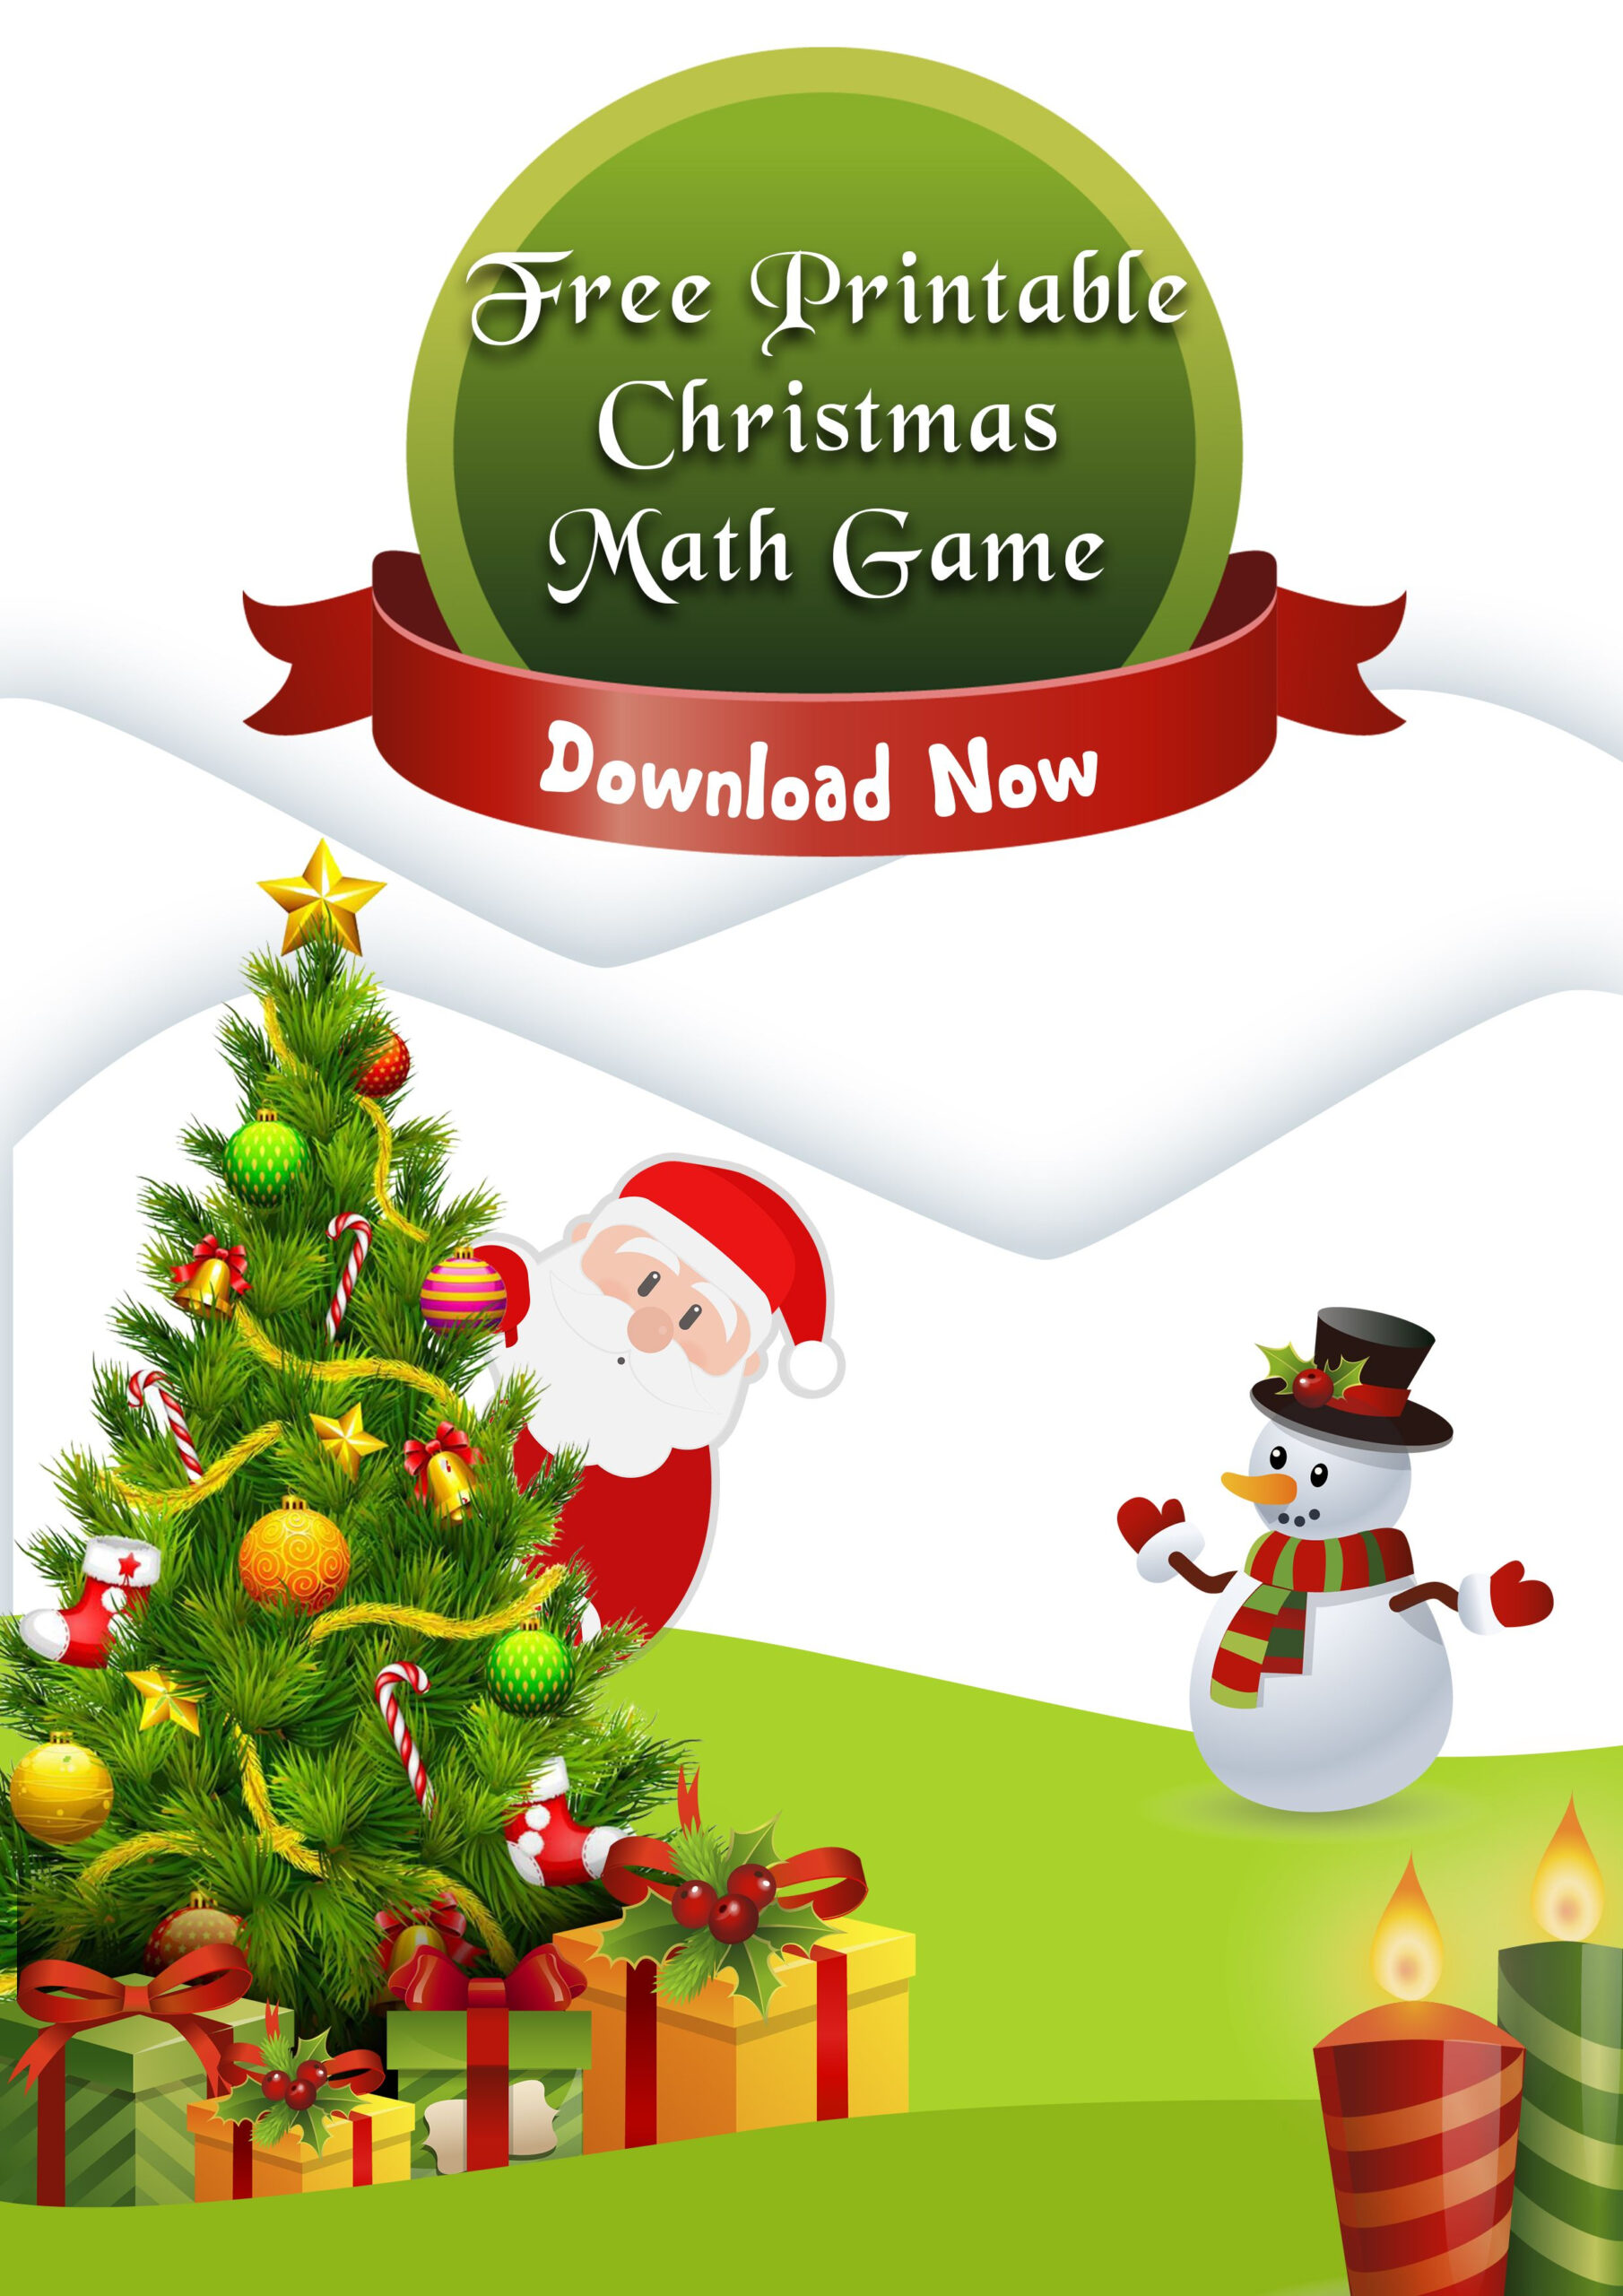 Free Christmas Printable Math Game - Fractions Roll